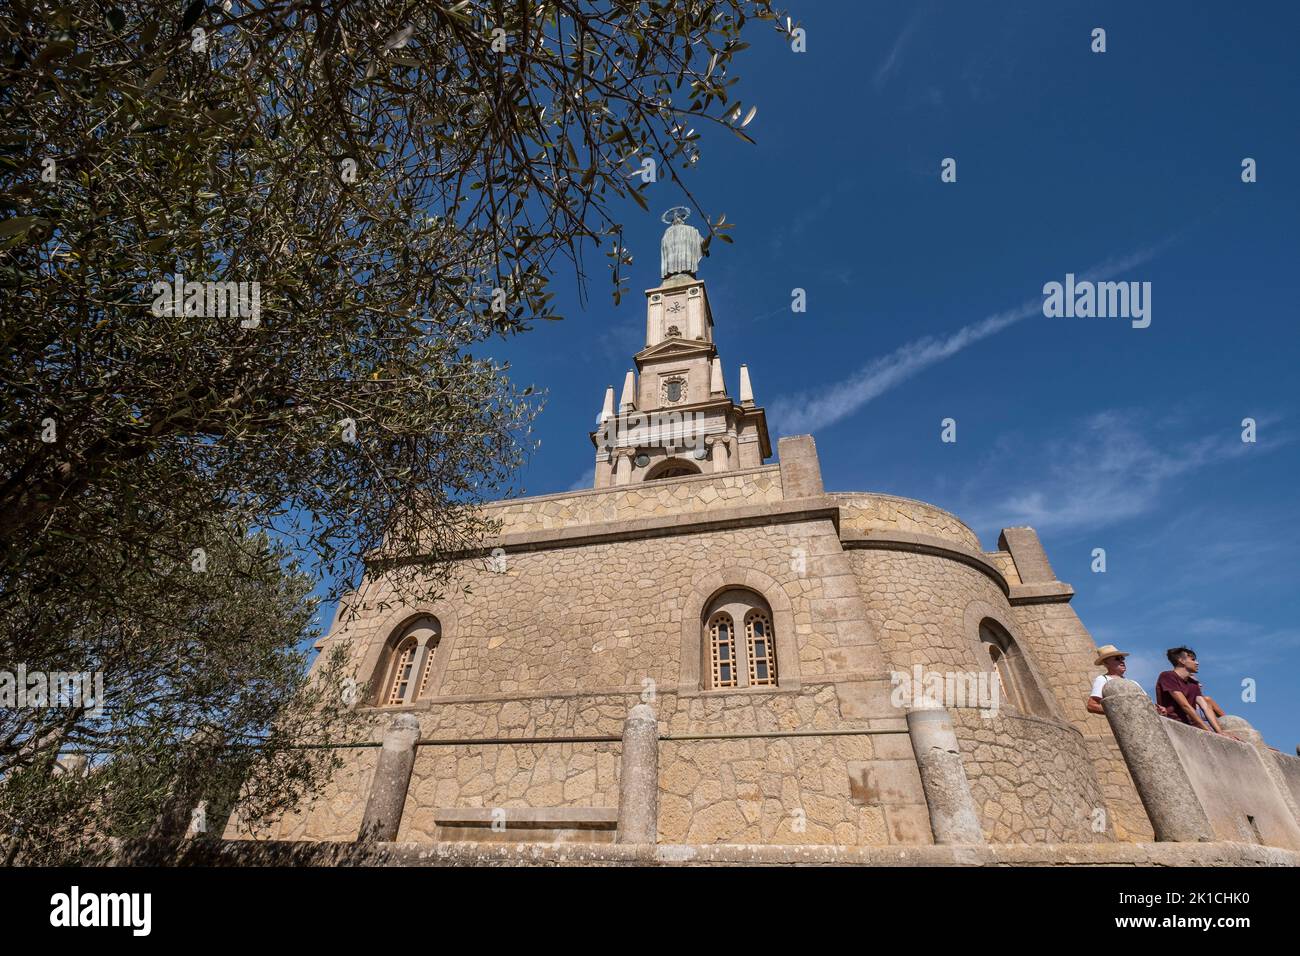 Sanctuary of the Mare de Déu de Sant Salvador, XIV century., Christ the King monument, Felanitx, Majorca, Balearic Islands, Spain Stock Photo